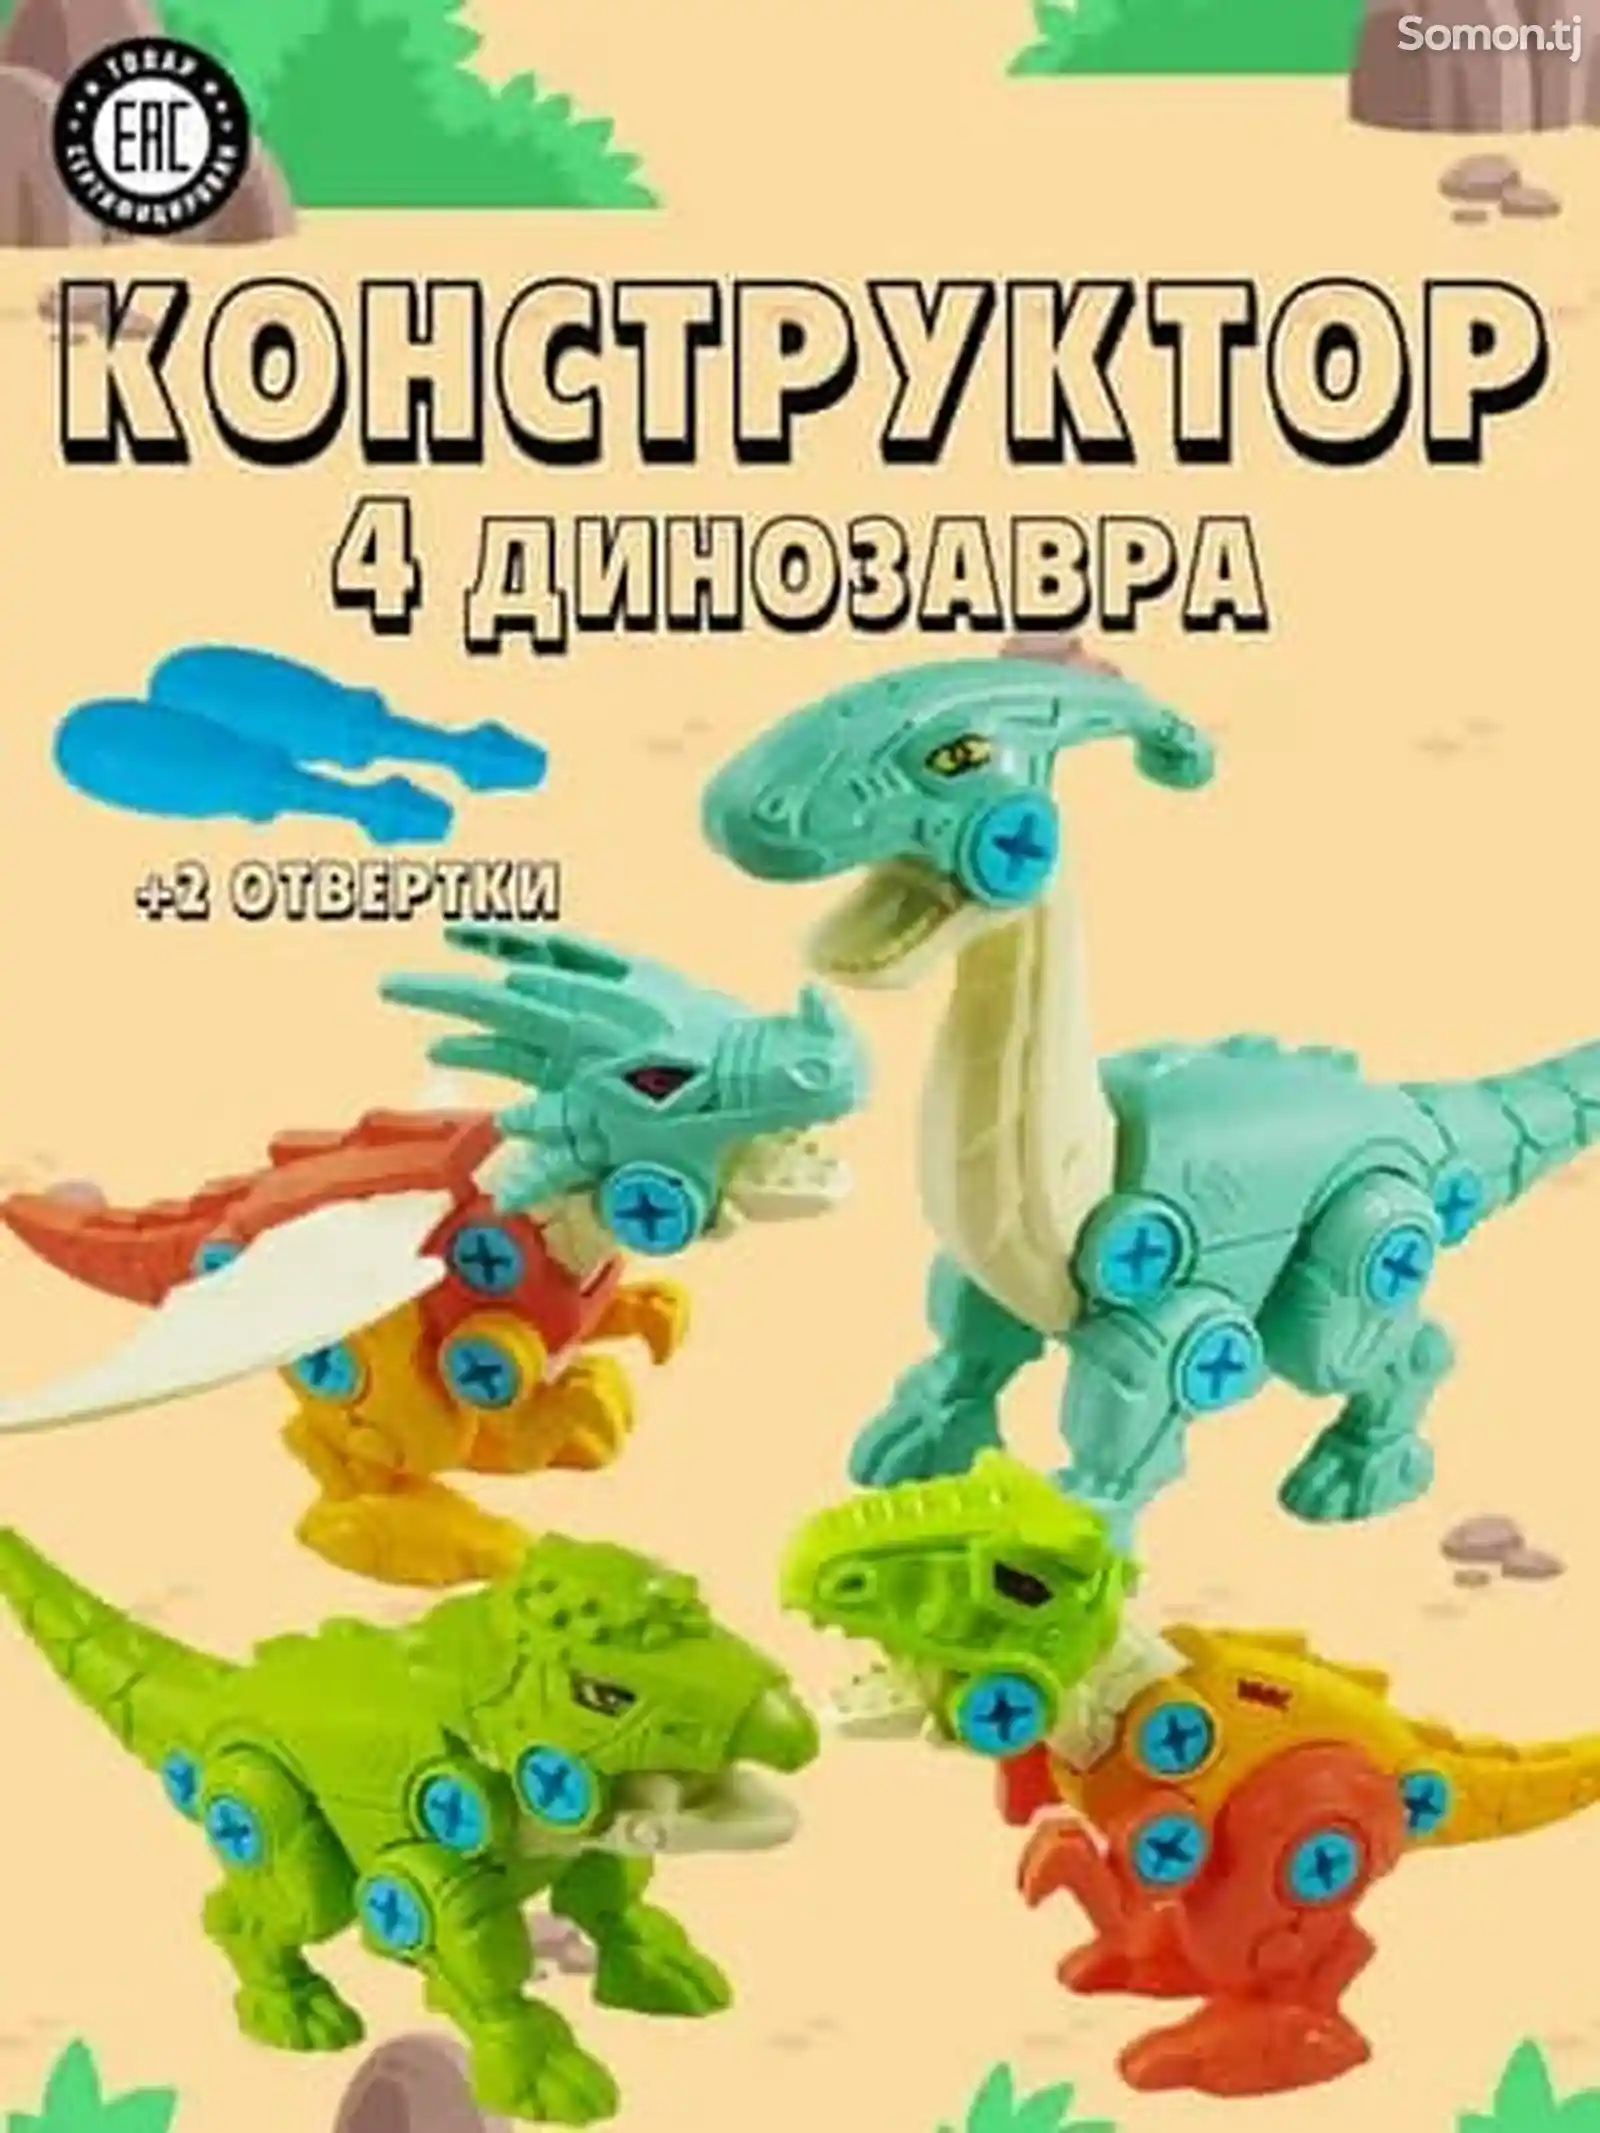 Конструктор динозавры на шурупах-1